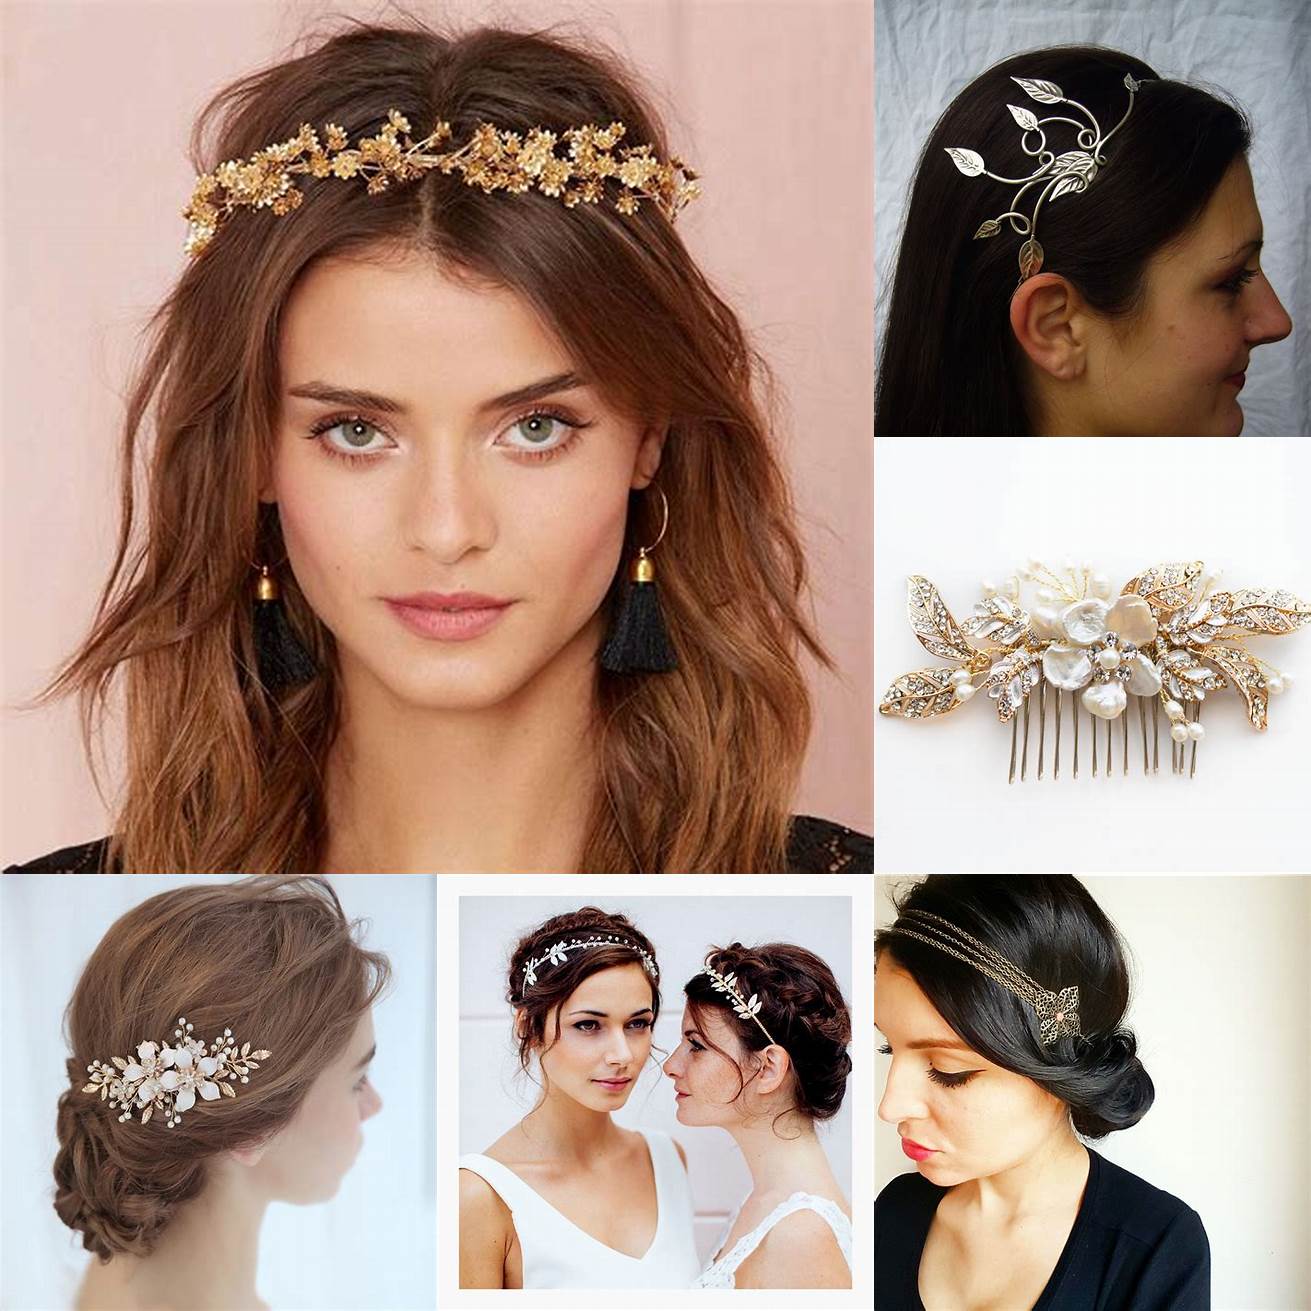 Bijoux de tête des peignes des serre-têtes ou des bandeaux ornés de perles de cristaux ou de fleurs peuvent donner une touche de glamour et de féminité à votre coiffure